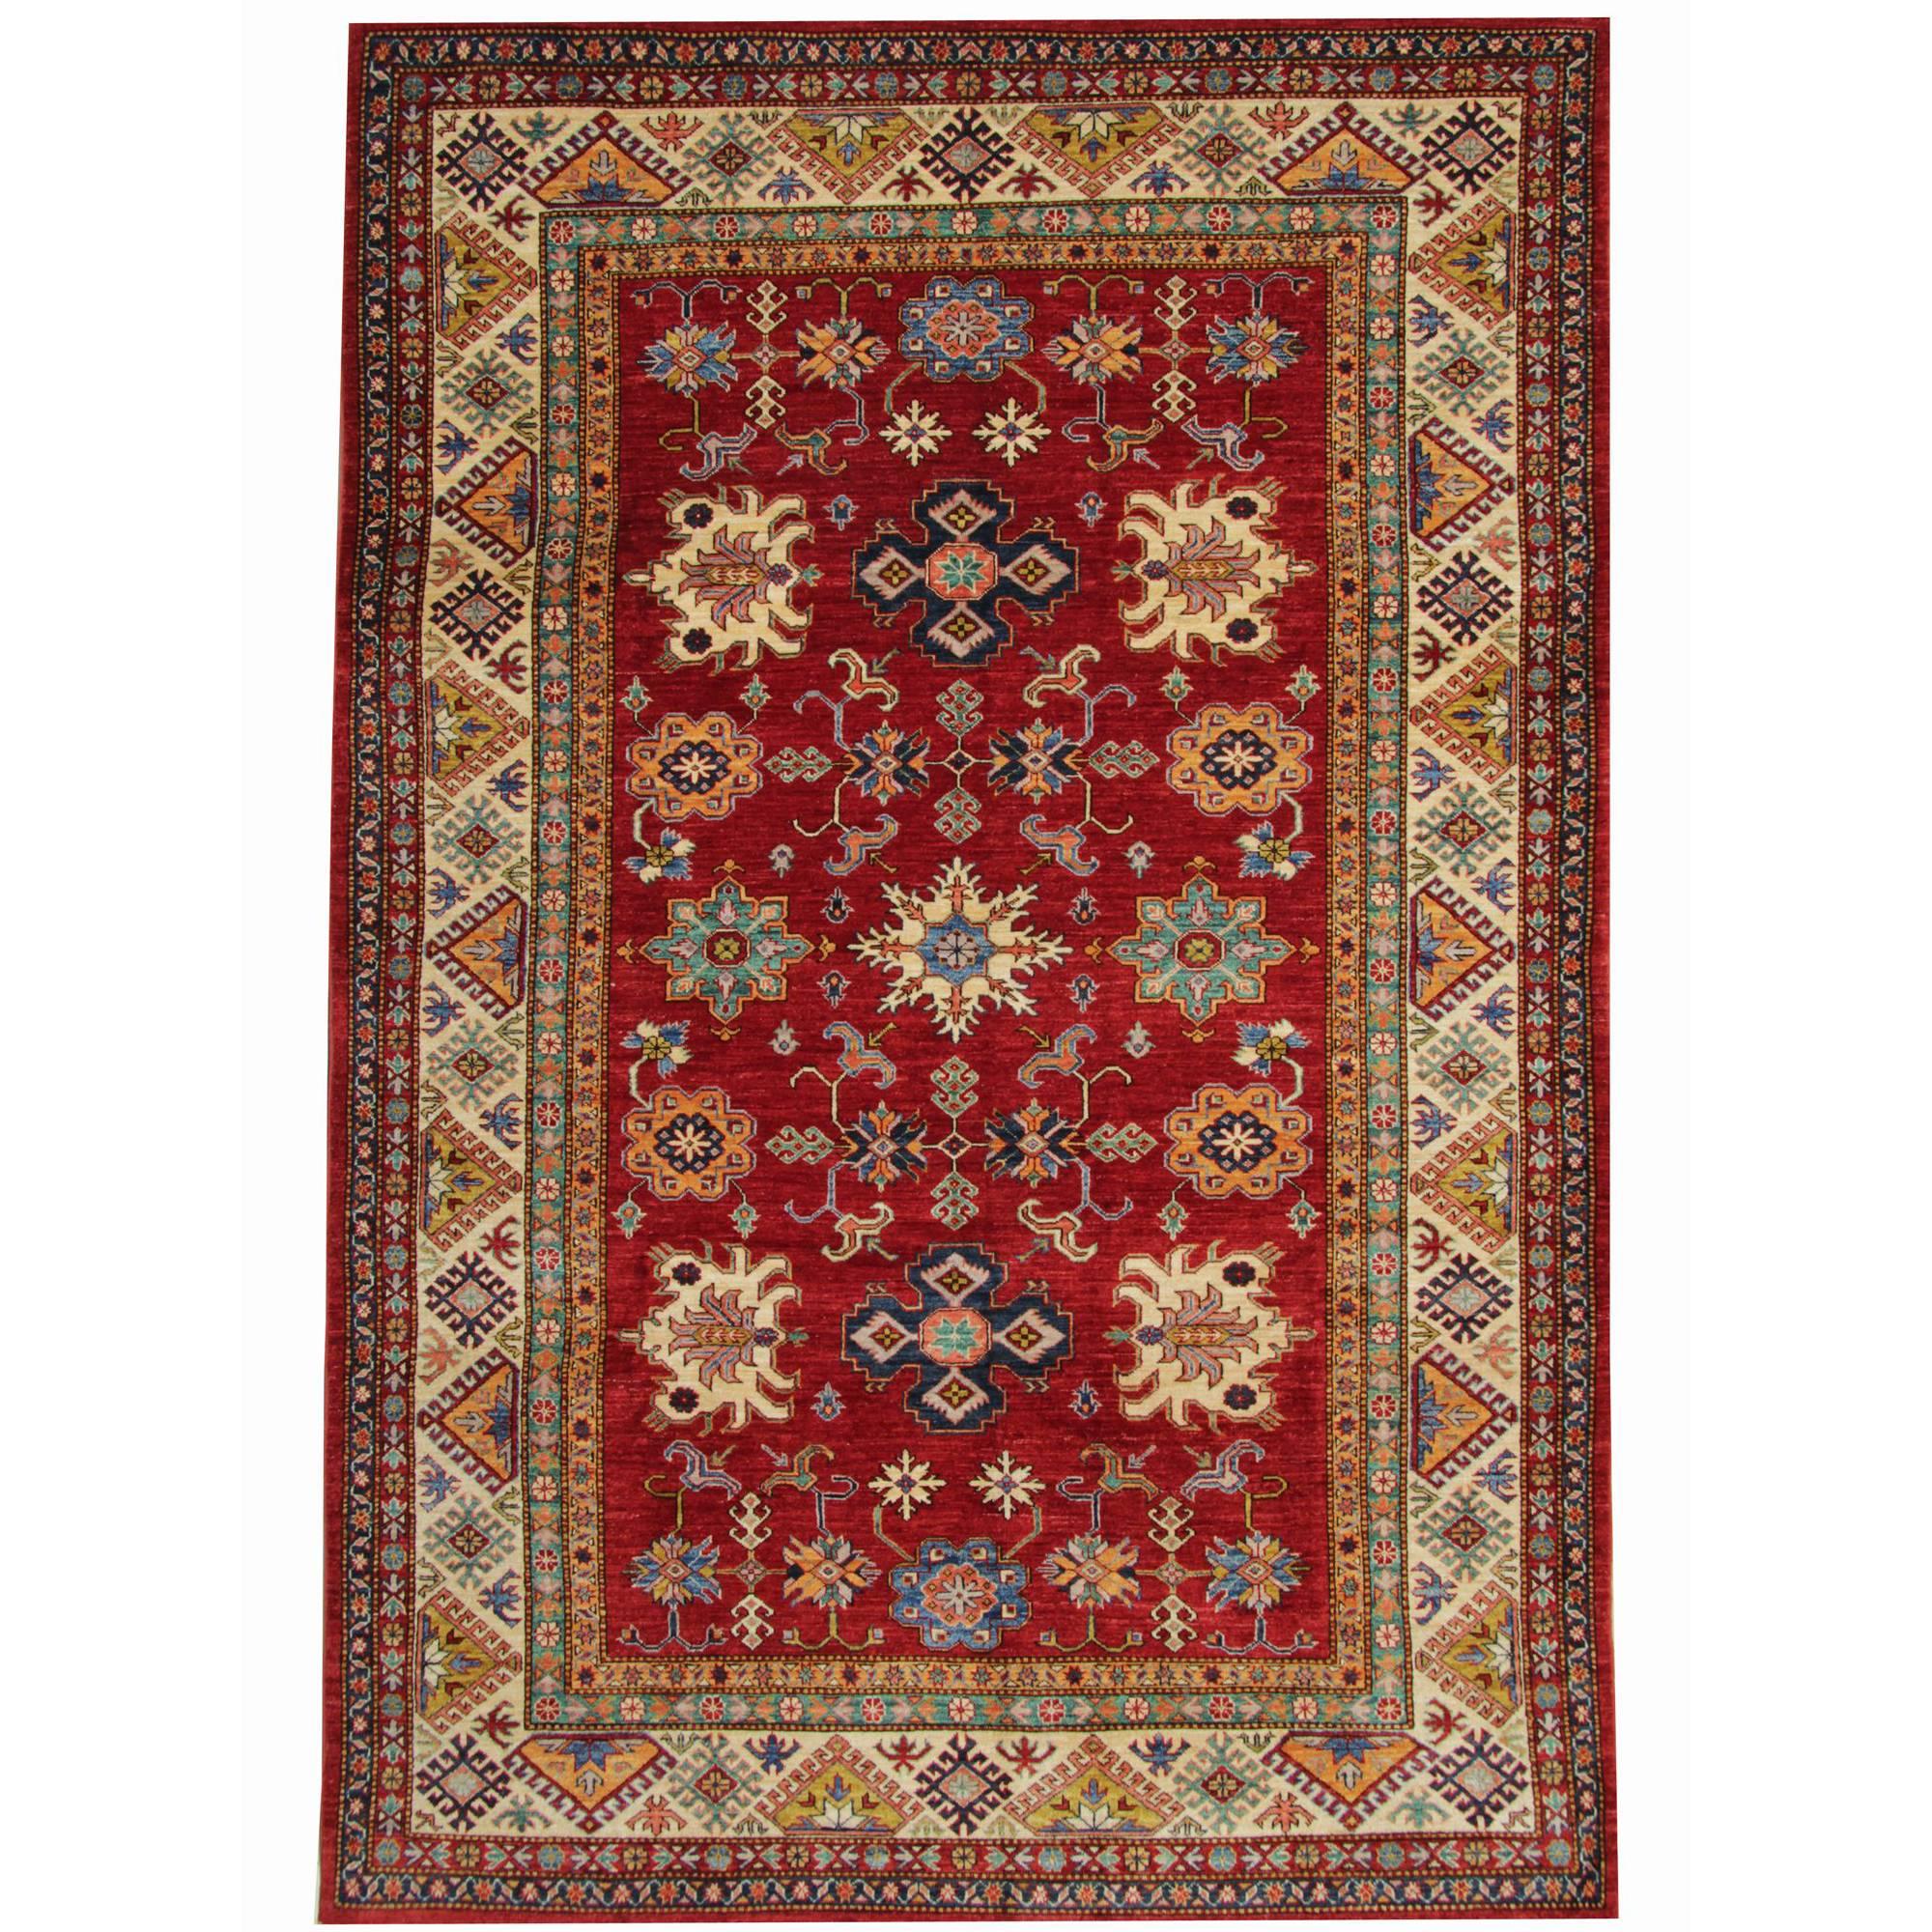 Tapis orientaux, tapis Kazak faits main, tapis traditionnels à vendre